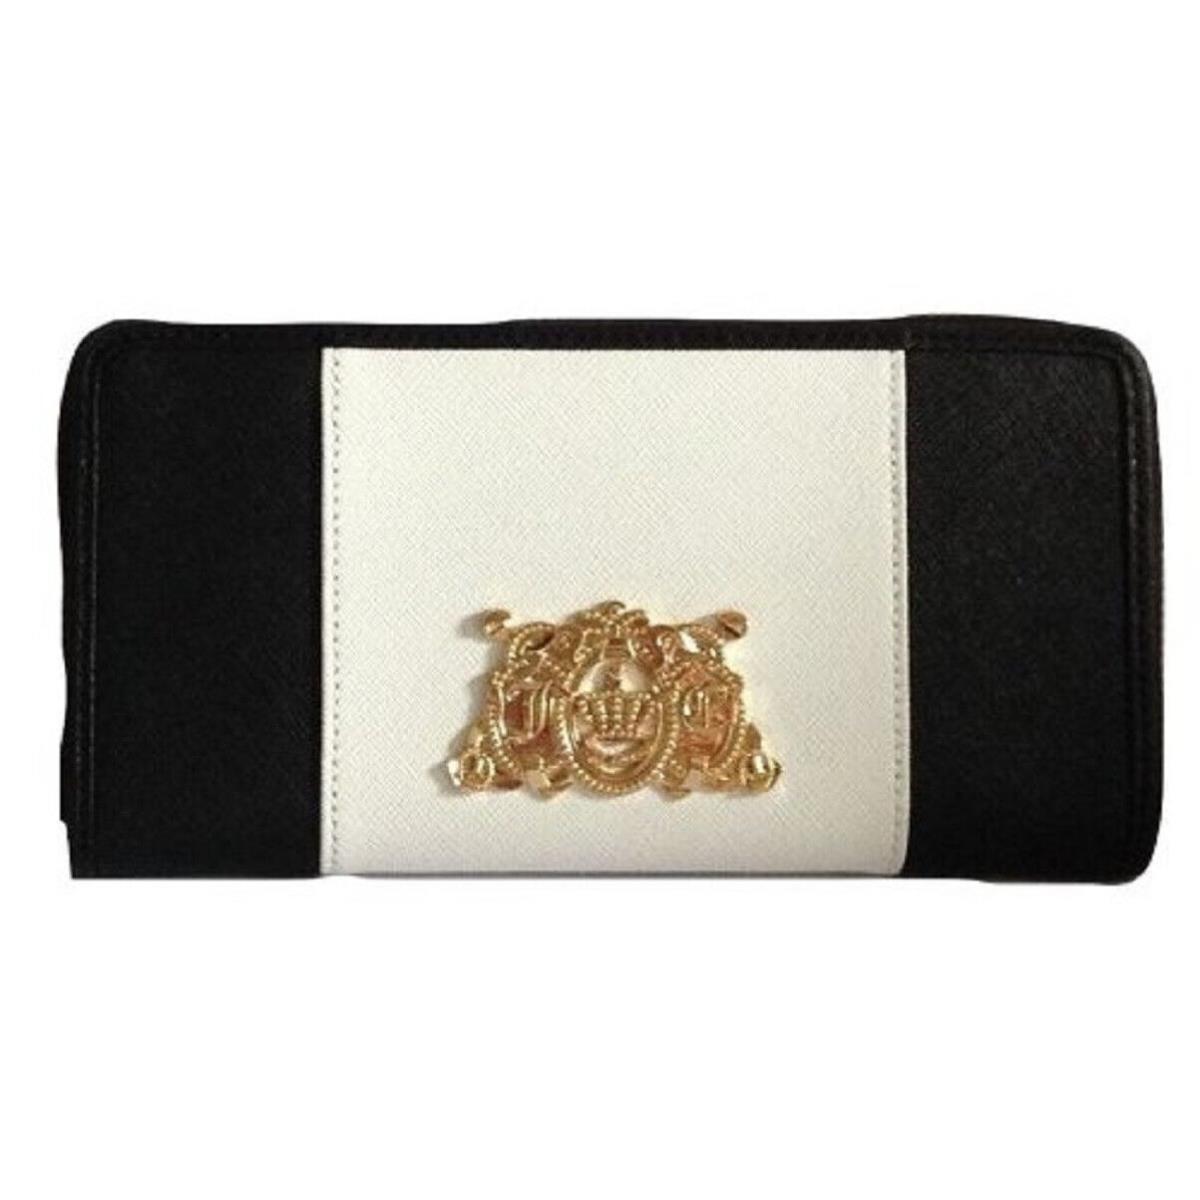 Juicy Couture YSRUS084 Dual Color Black White Large Zip Wallet 8x4